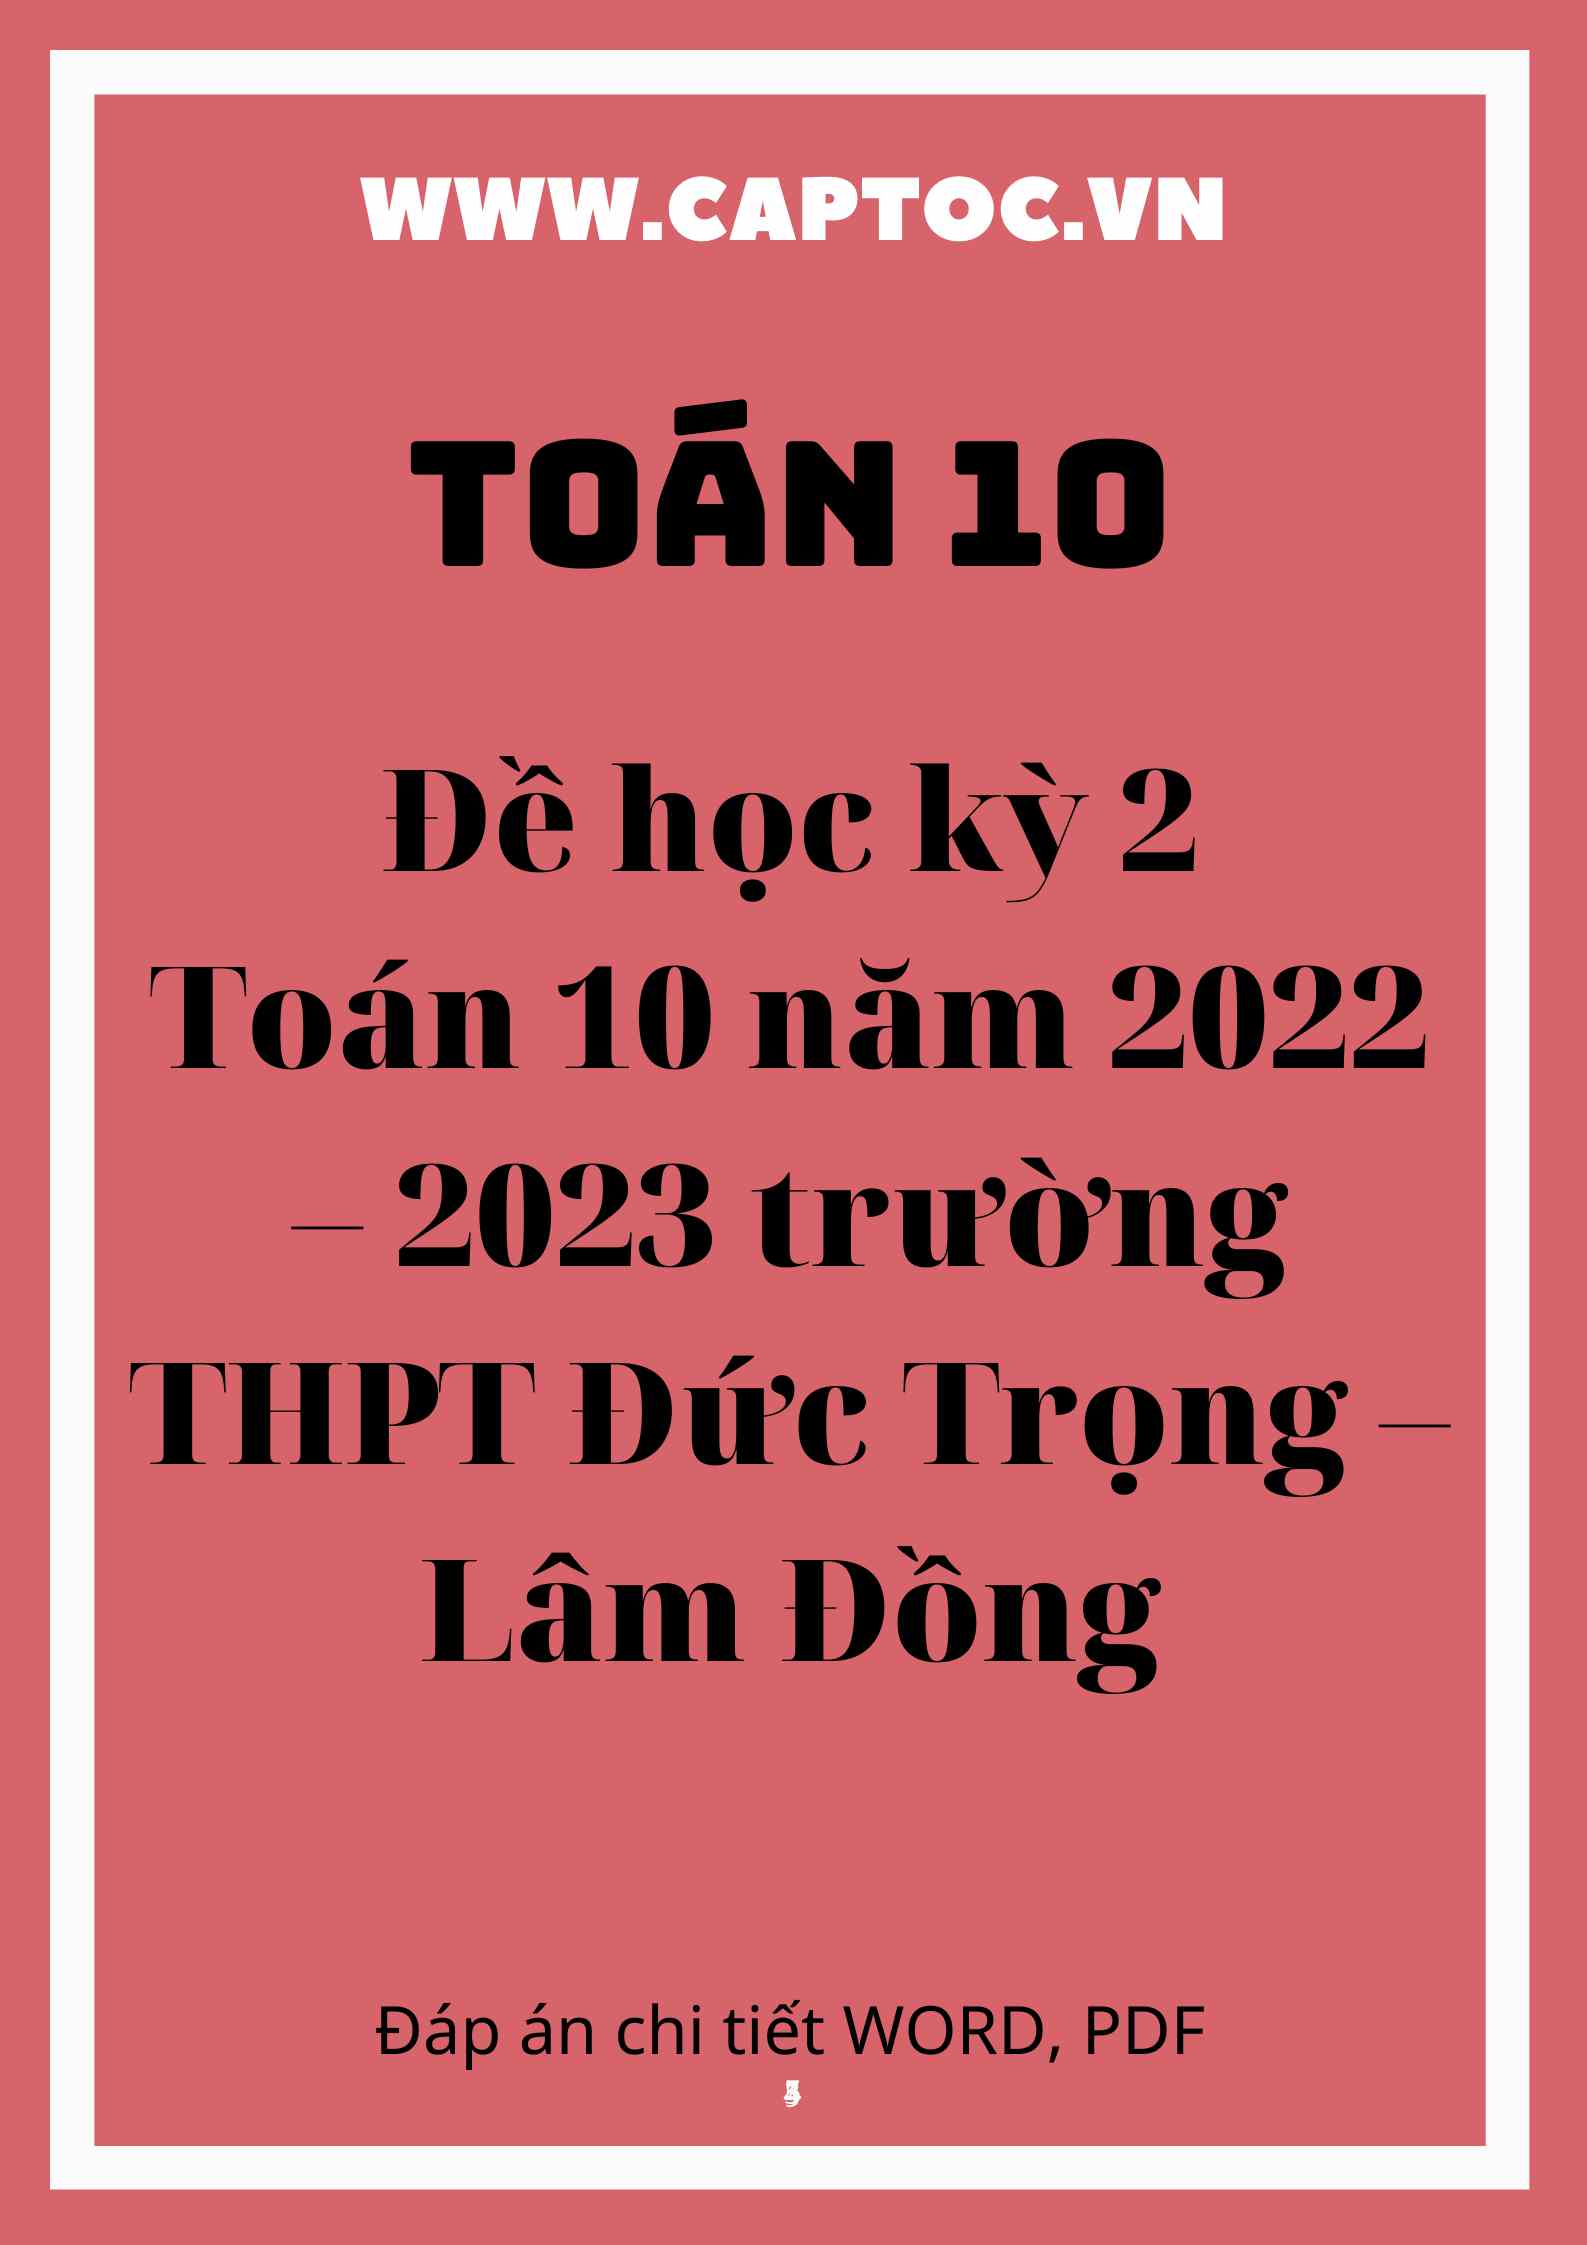 Đề học kỳ 2 Toán 10 năm 2022 – 2023 trường THPT Đức Trọng – Lâm Đồng